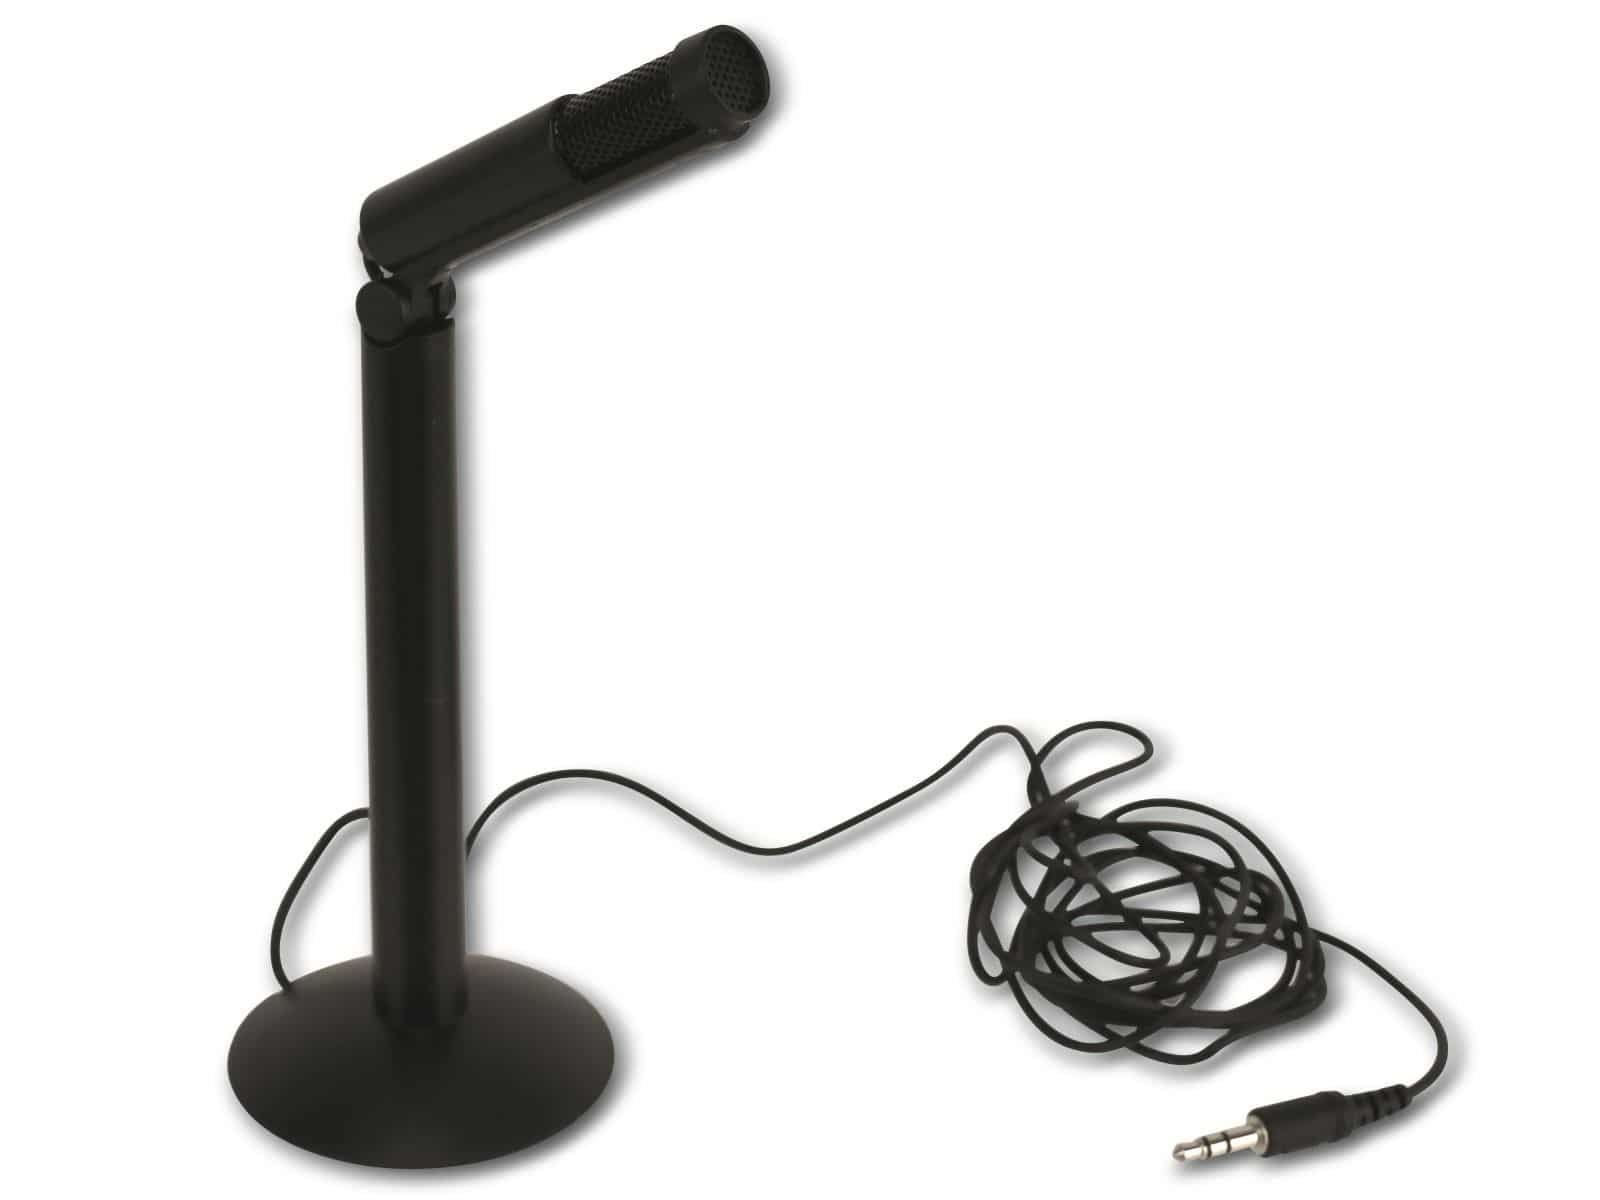 Velleman Mikrofon VELLEMAN HQMC10004, schwarz Tischmikrofon